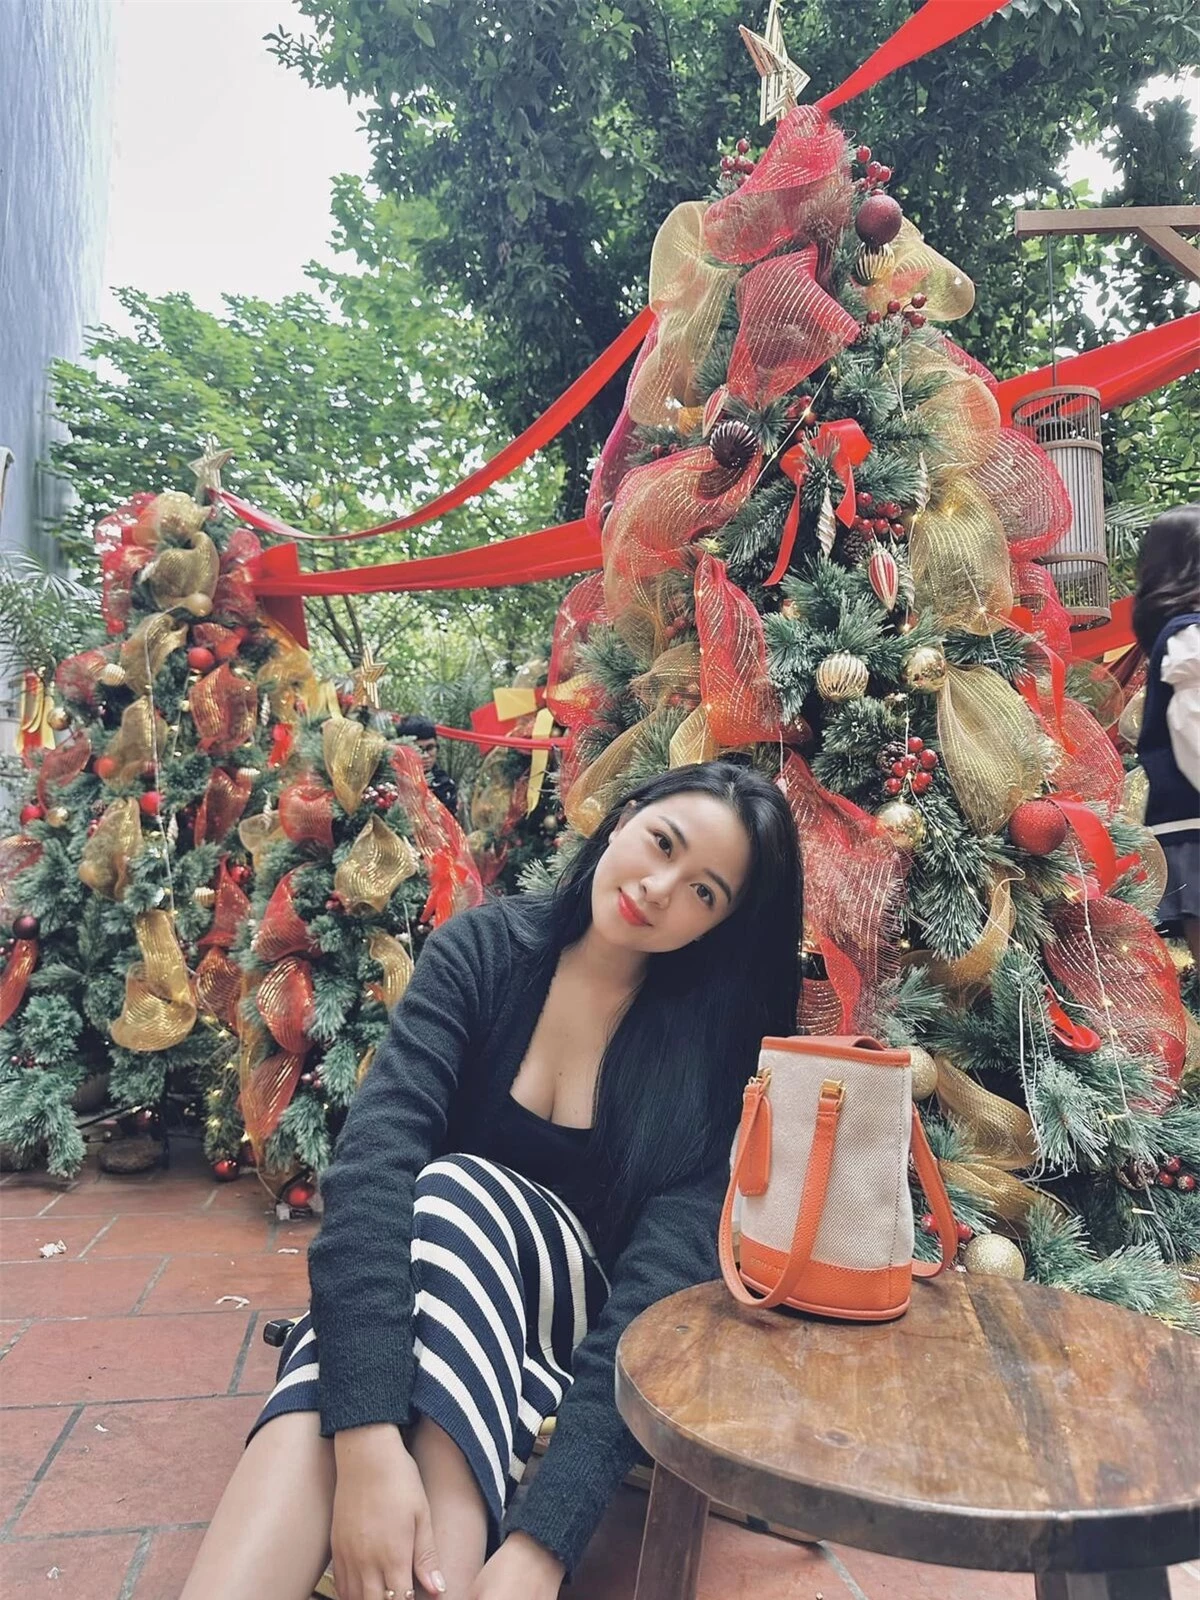 Cựu hot girl Võ Nhật Linh - bà xã của cầu thủ Phan Văn Đức nhận được nhiều lời khen ngợi khi tung ảnh Giáng sinh. Người đẹp quê Nghệ An được nhận xét ngày càng xinh đẹp, gợi cảm.